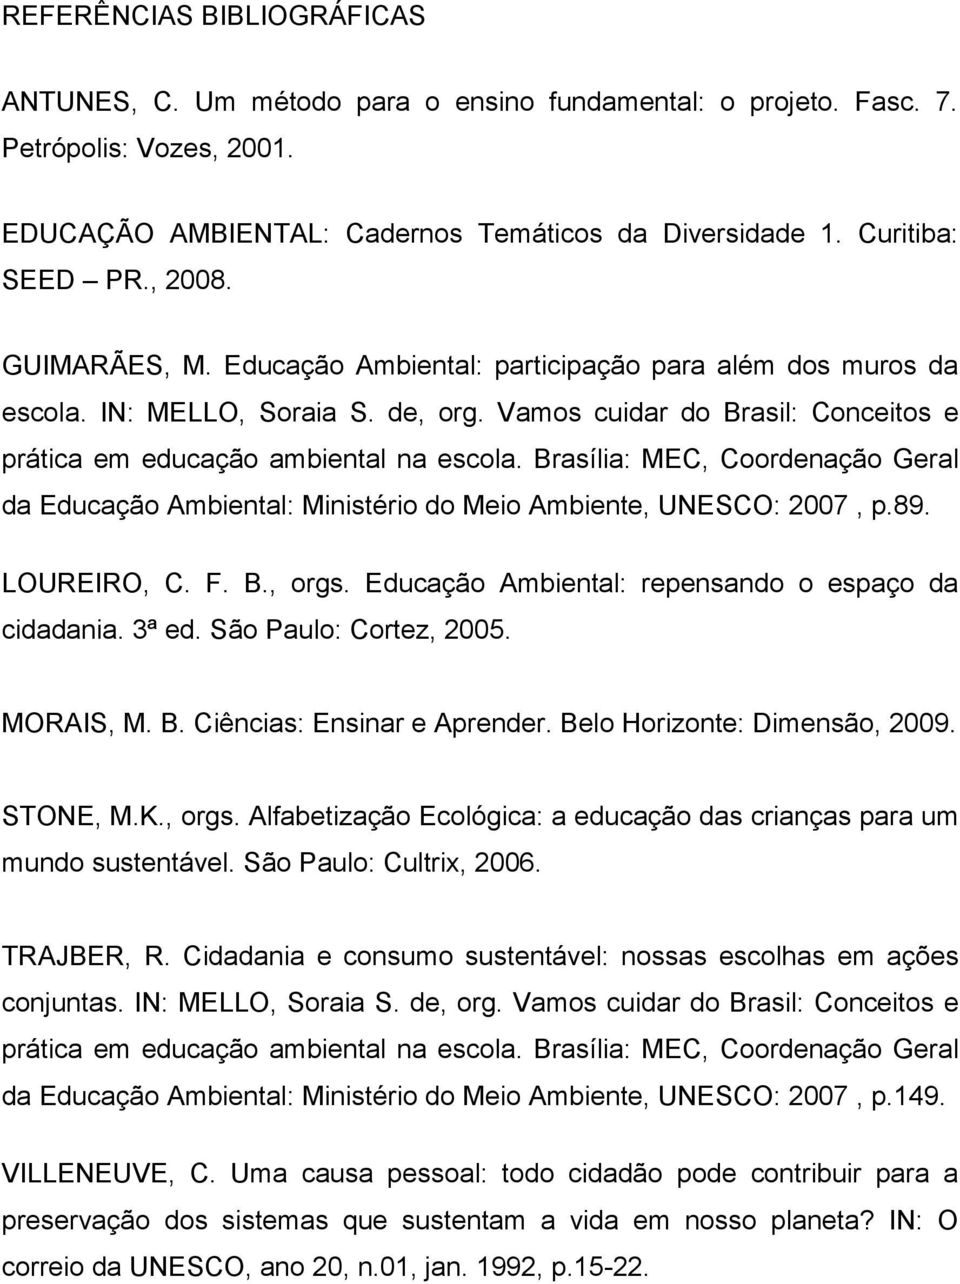 Brasília: MEC, Coordenação Geral da Educação Ambiental: Ministério do Meio Ambiente, UNESCO: 2007, p.89. LOUREIRO, C. F. B., orgs. Educação Ambiental: repensando o espaço da cidadania. 3ª ed.